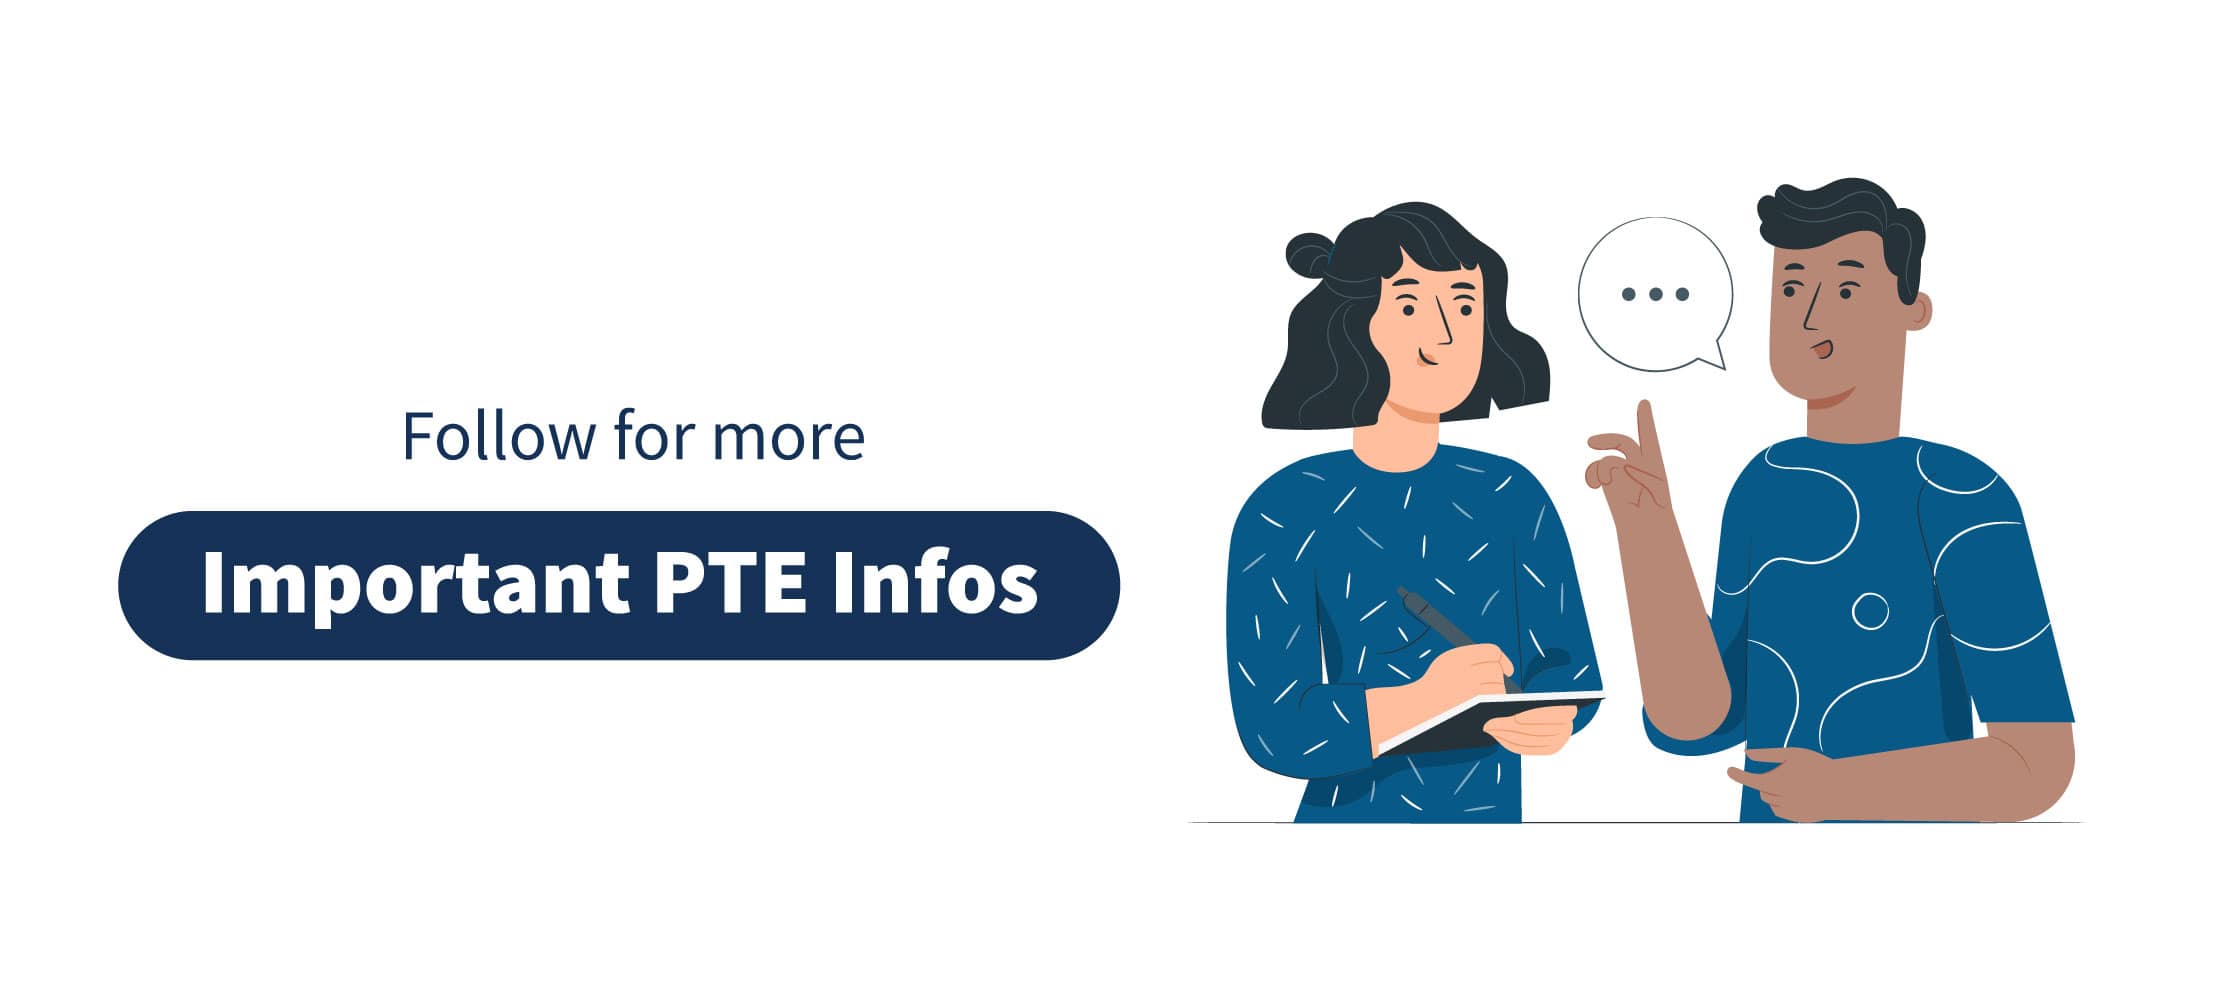 PTE Online Practice Info